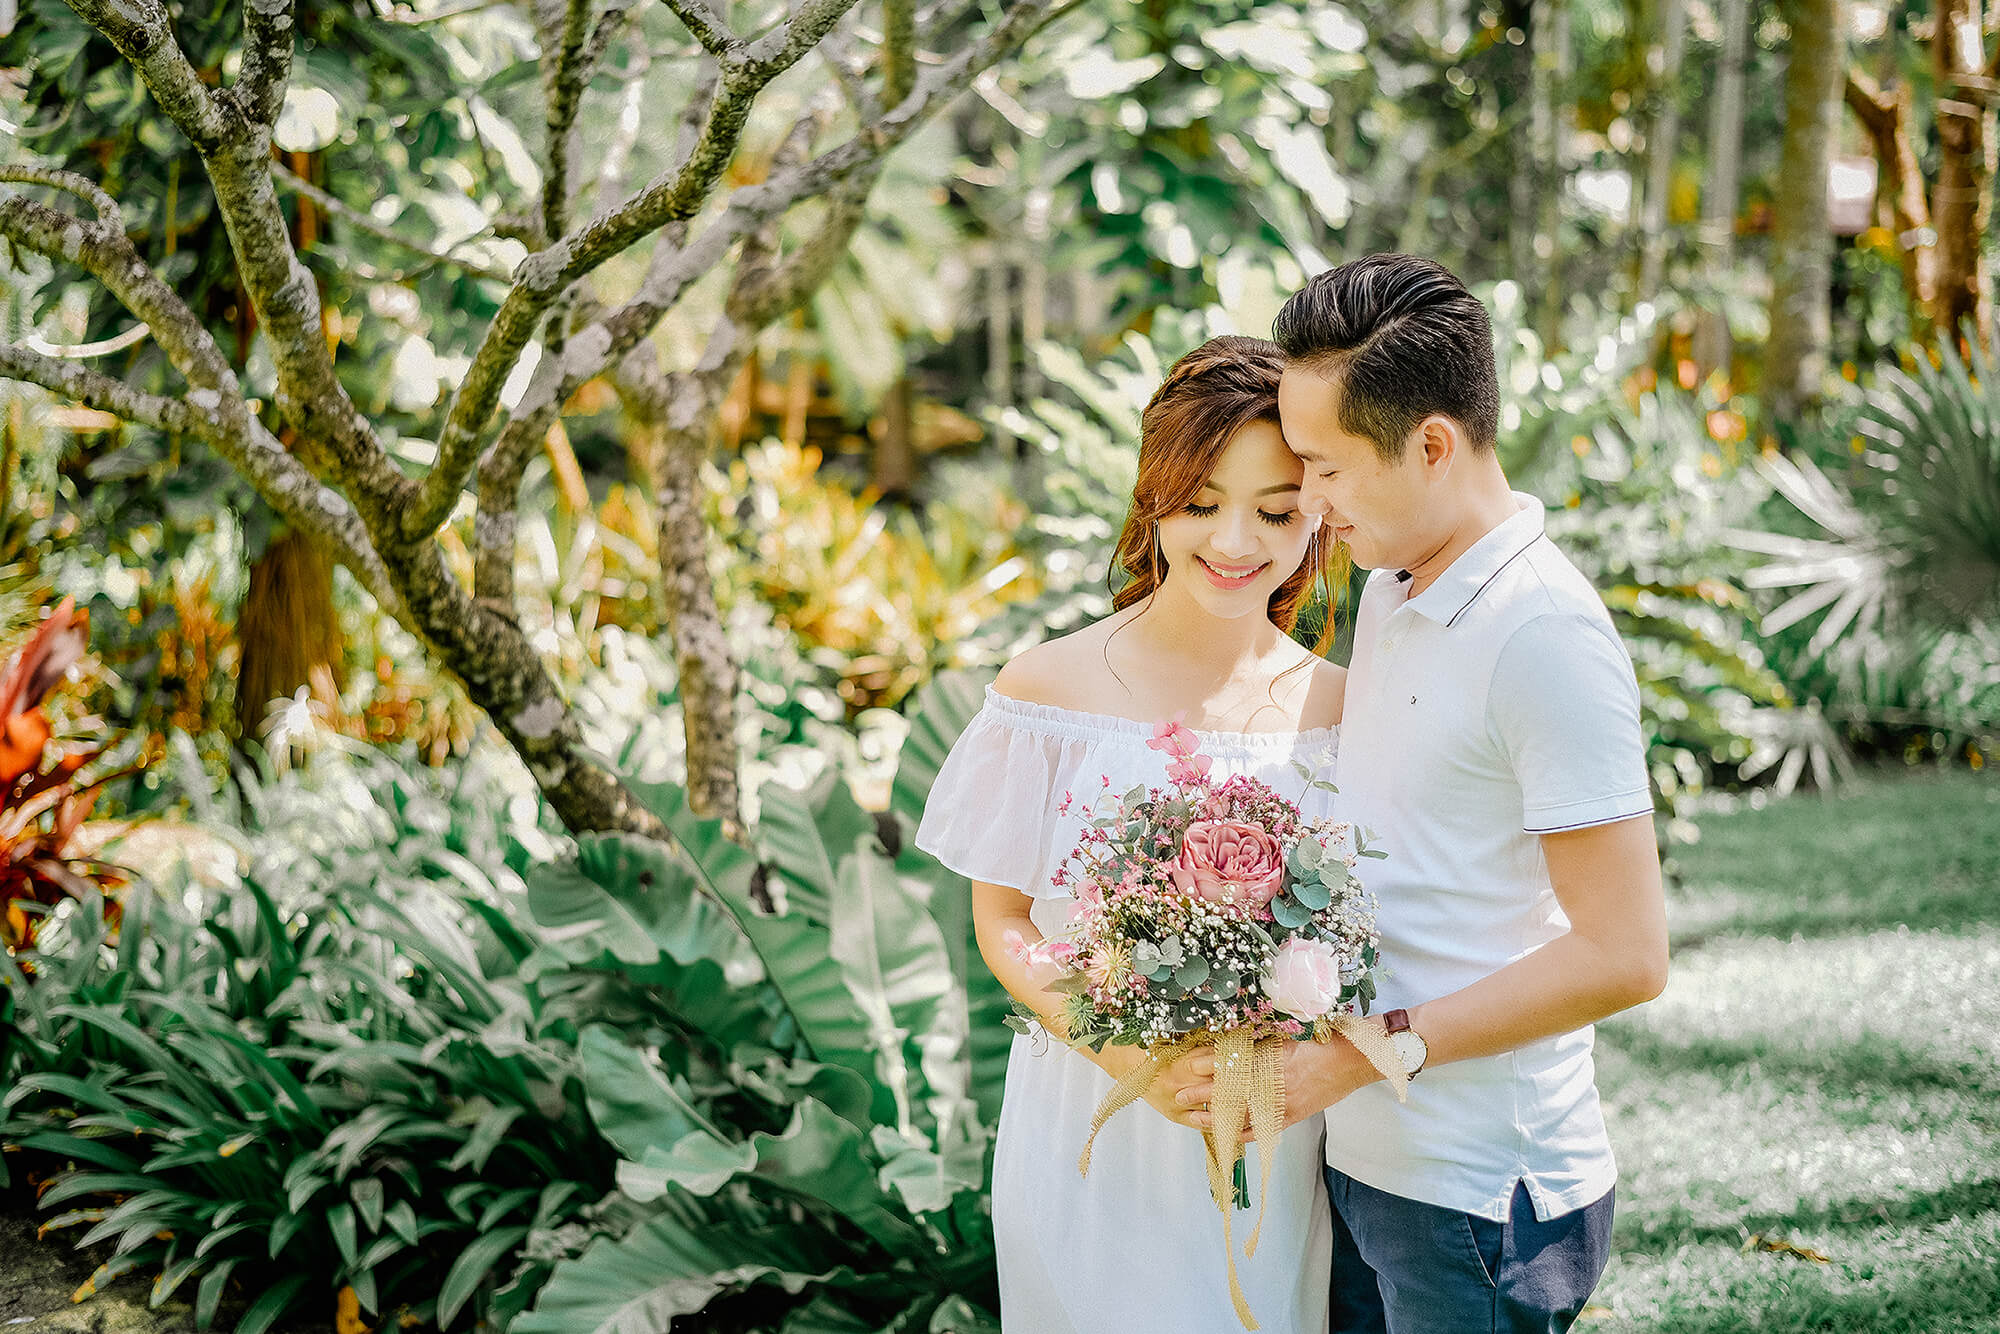 Honeymoon Travel in Phuket with Photographer